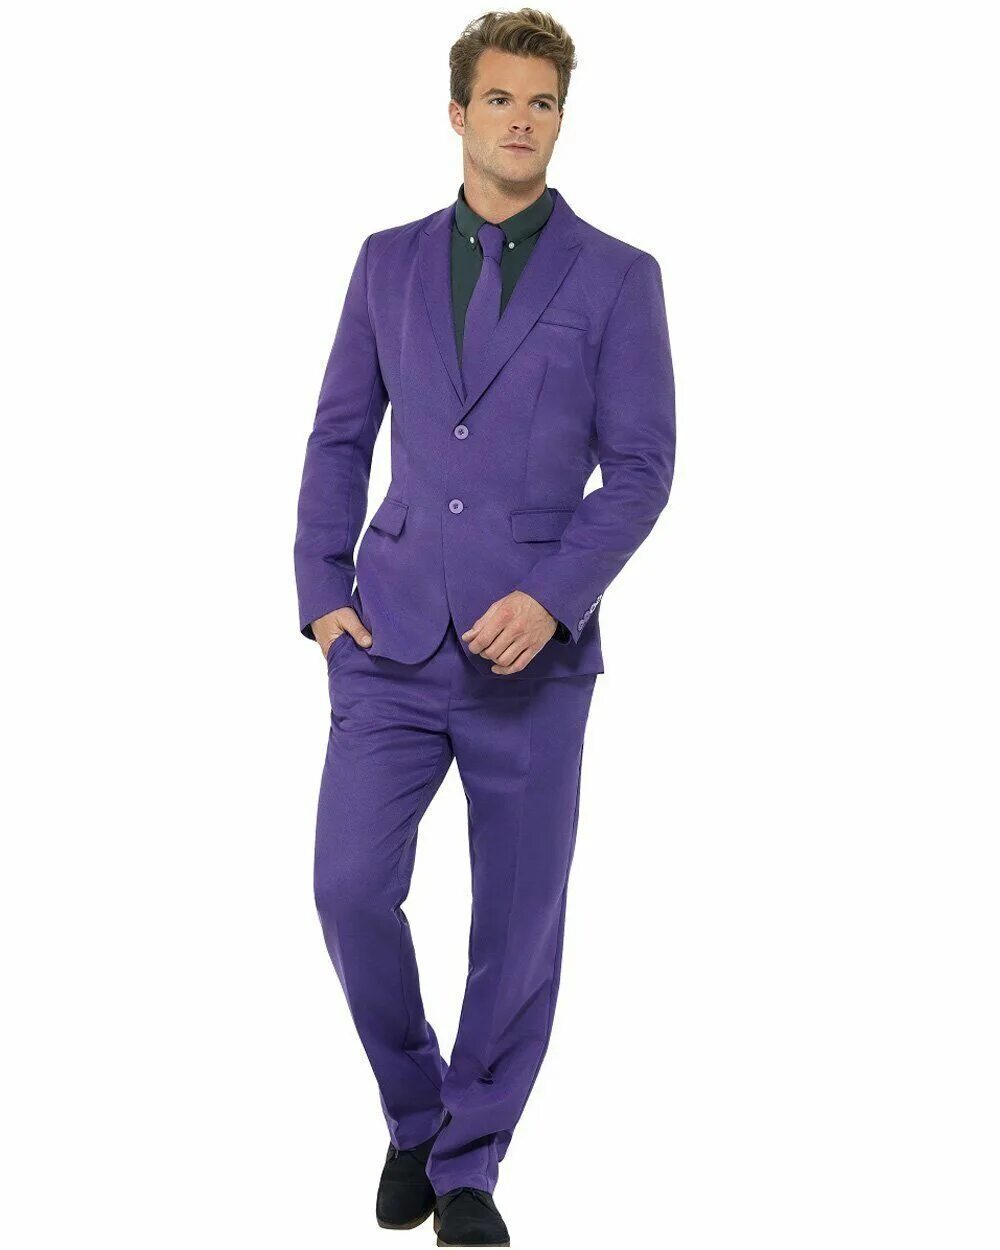 Фиолетовый мужской цвет. Фиолетовый костюм. Фиолетовый костюм мужской. Сиреневый костюм мужской. Лиловый костюм мужской.